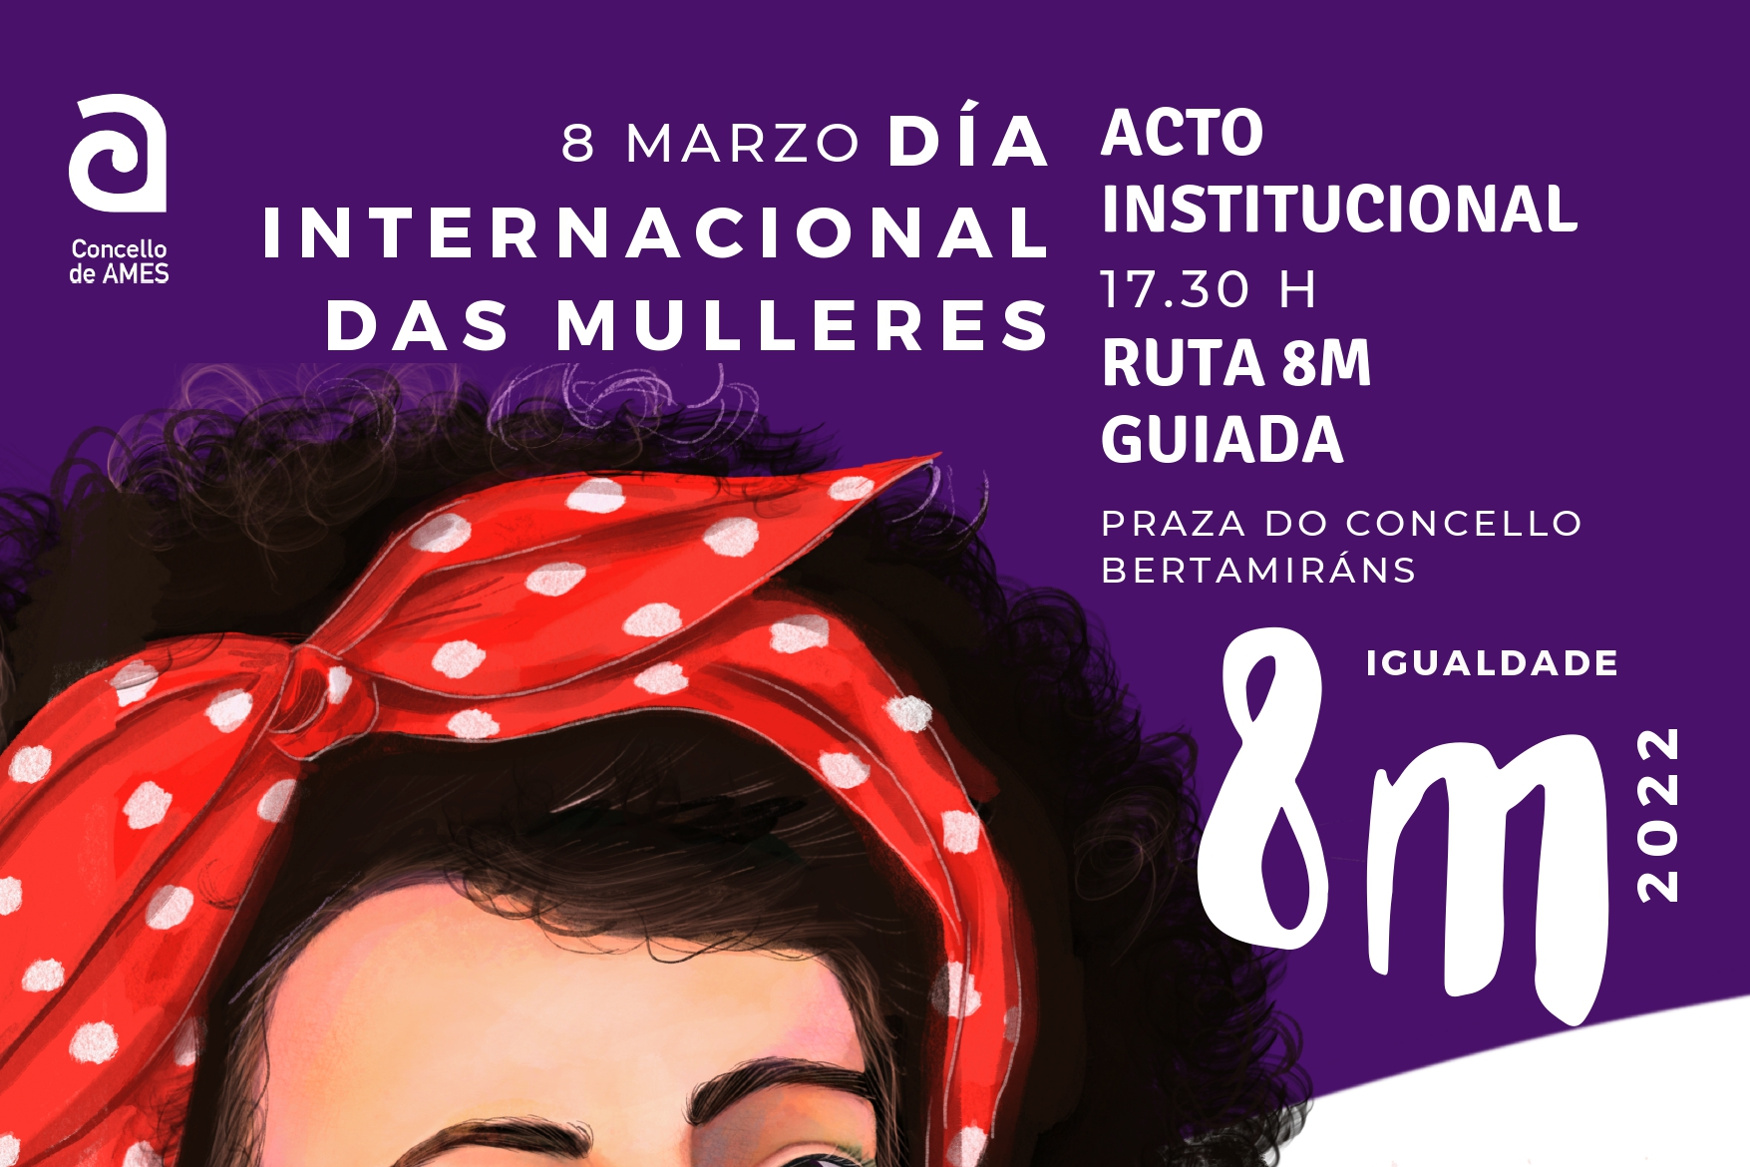 O Concello de Ames celebra o Día Internacional da Muller cun acto institucional e unha andaina guiada pola ruta 8M